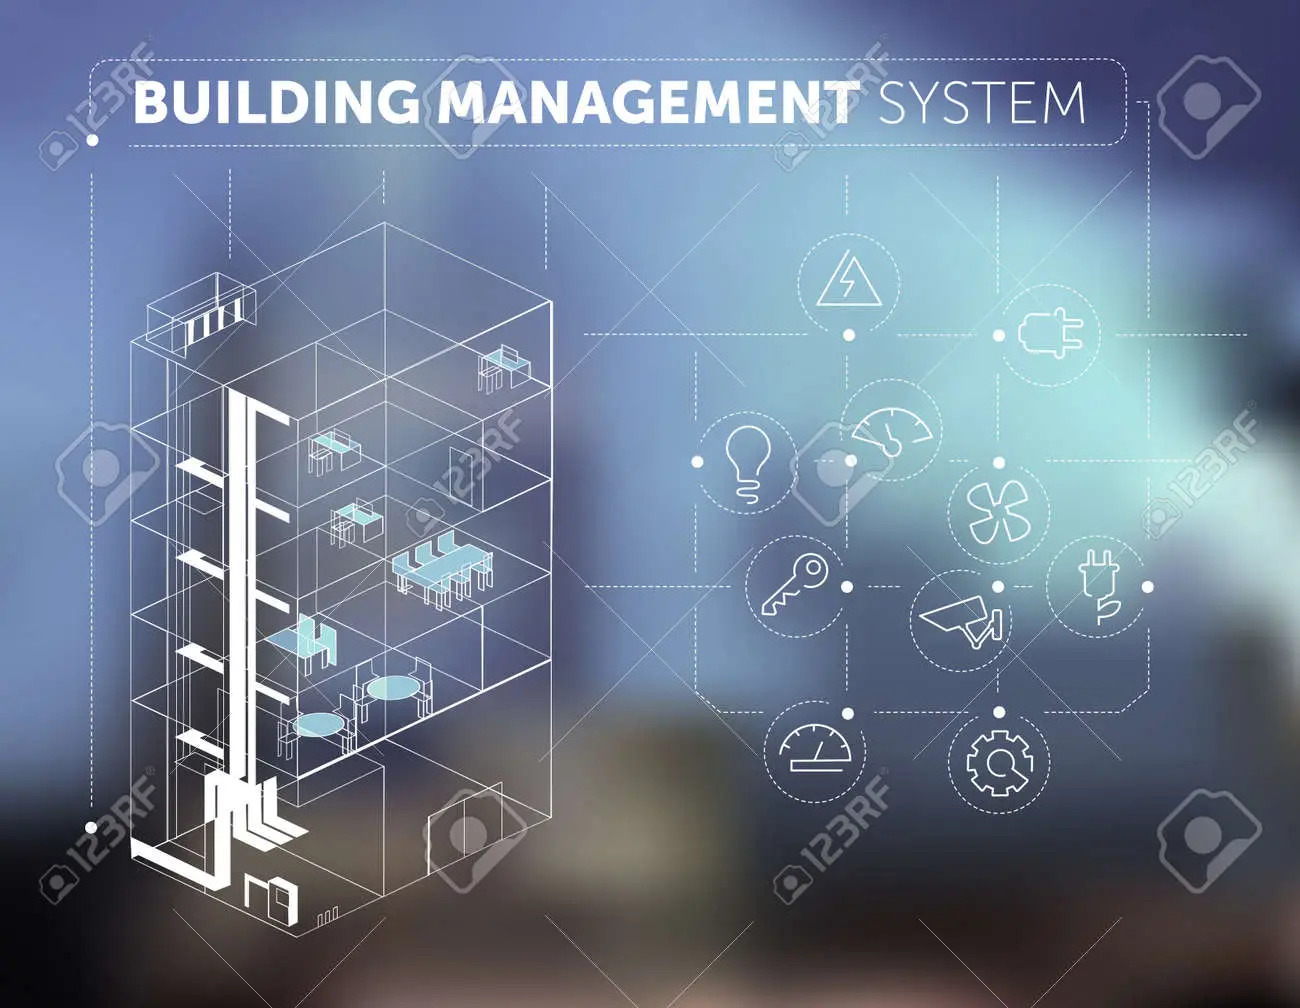 یو پی اس برای BMS یا سامانه مدیریت ساختمان